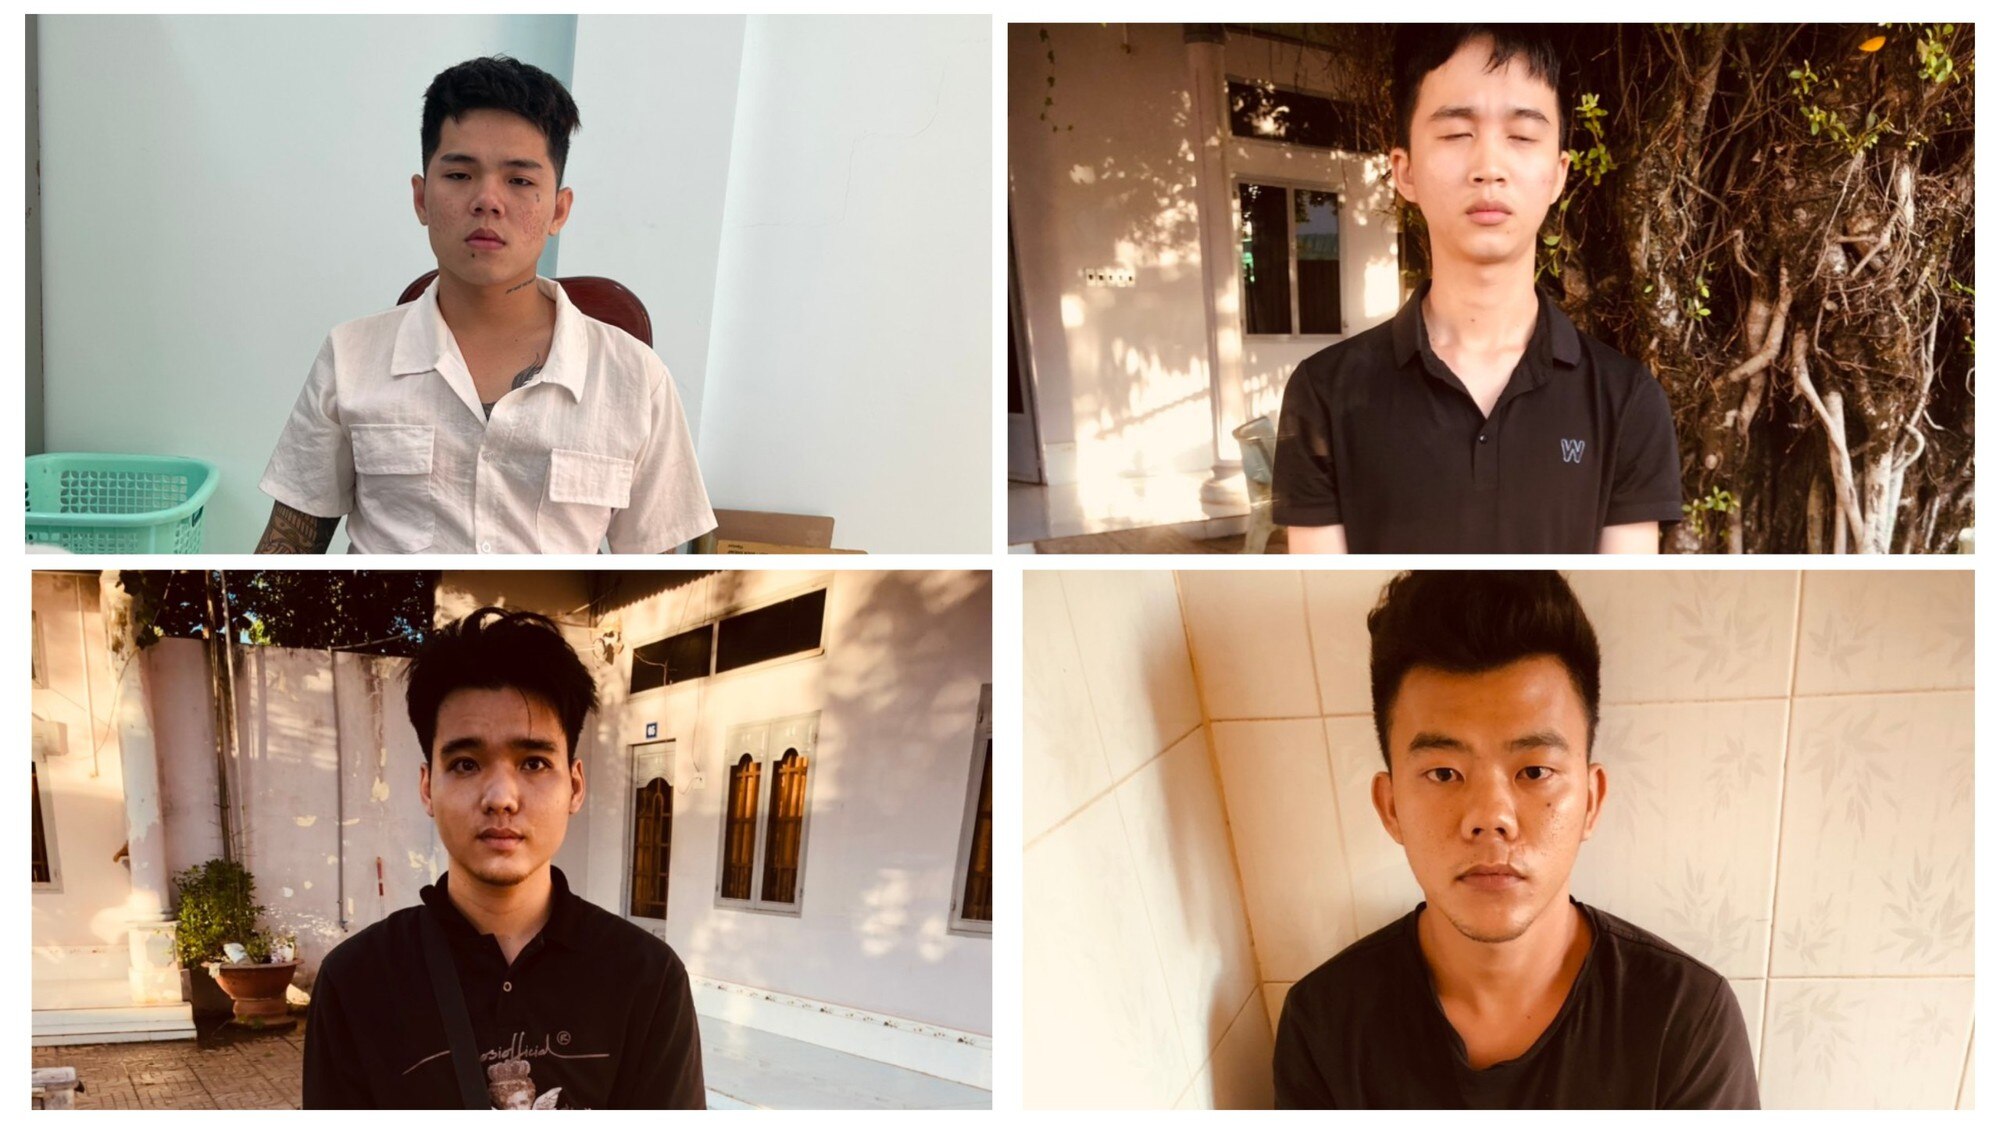 Hỗn chiến khiến 1 người tử vong tại Bình Phước: Đã bắt giữ 4 nghi can - Ảnh 2.